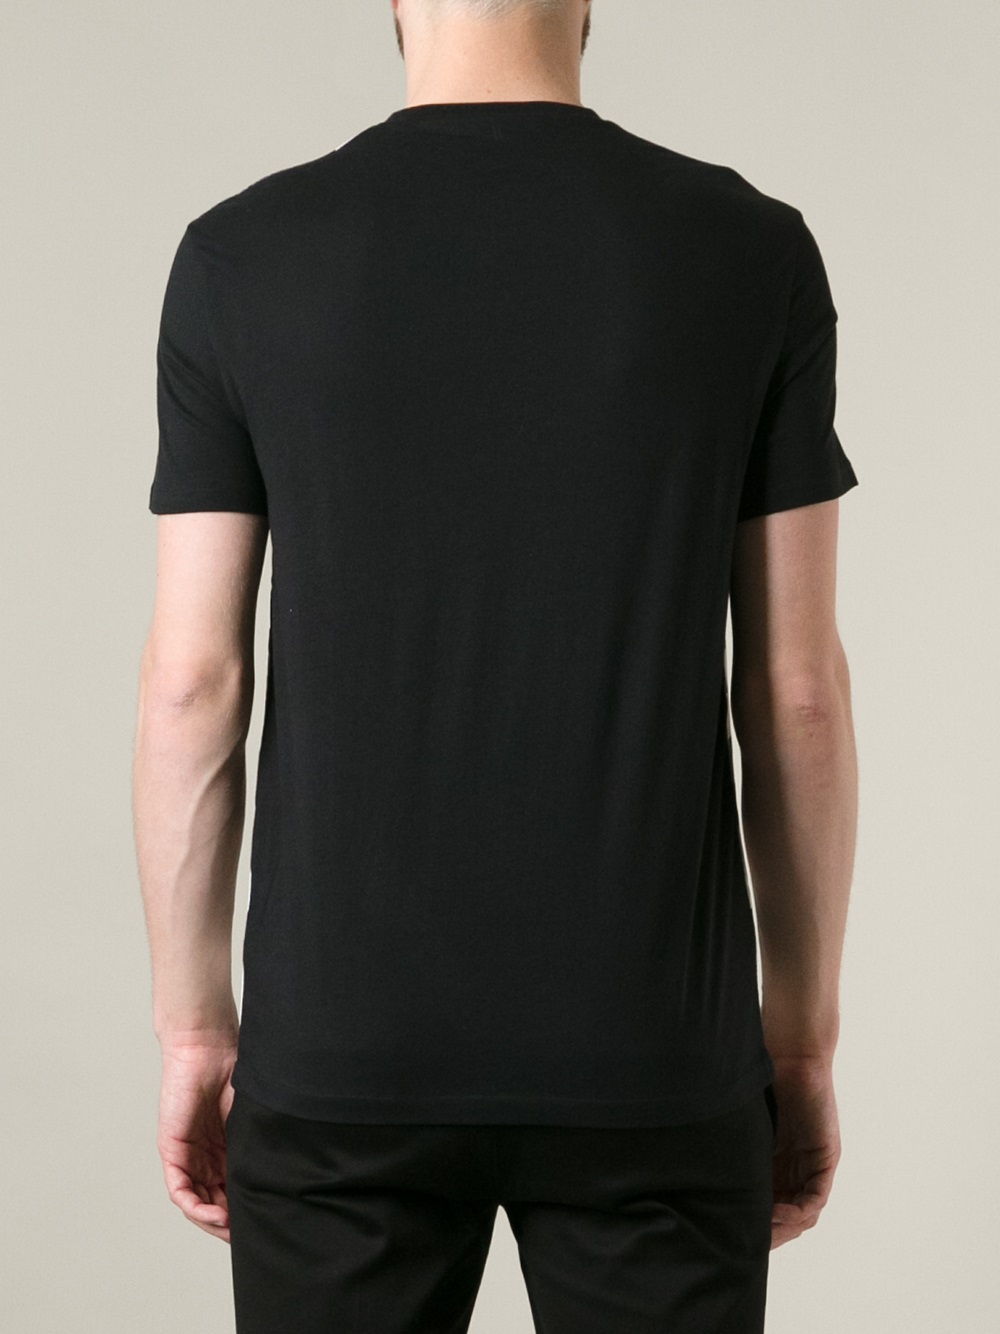 Lyst - Neil Barrett Checked Tshirt in Black for Men